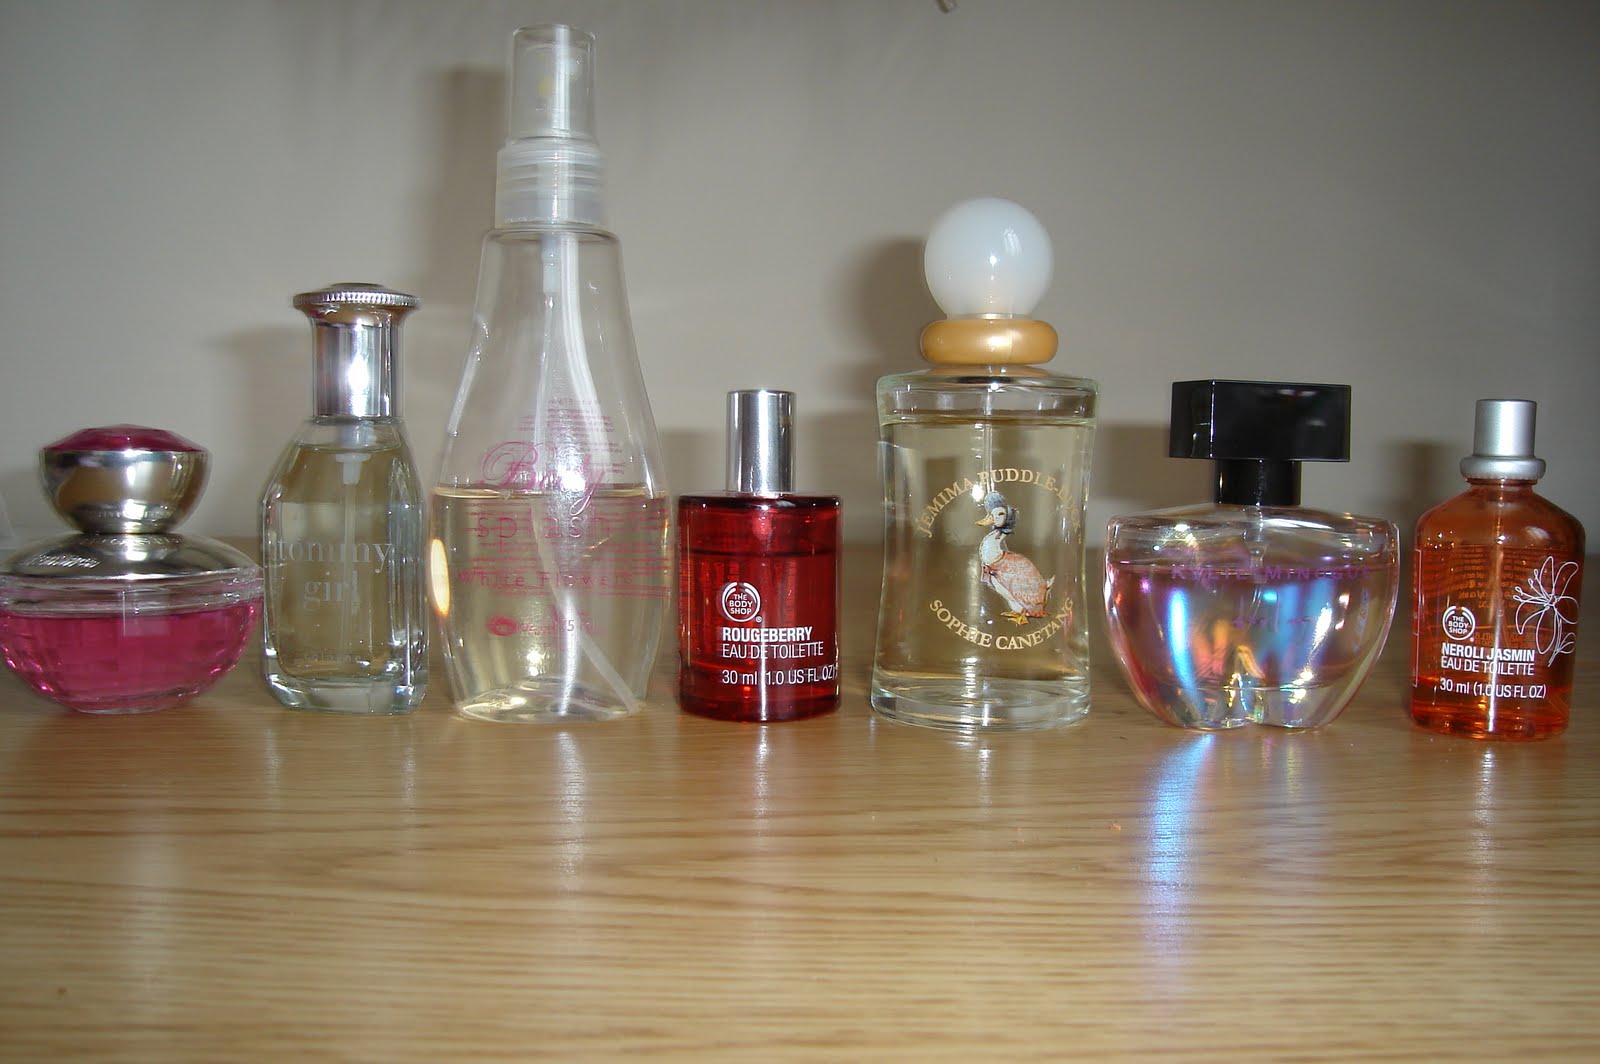 http://1.bp.blogspot.com/_TOATrYZ2H_M/TL28DKpNhQI/AAAAAAAAA4o/iK0cQ2pyRP8/s1600/parfum.JPG